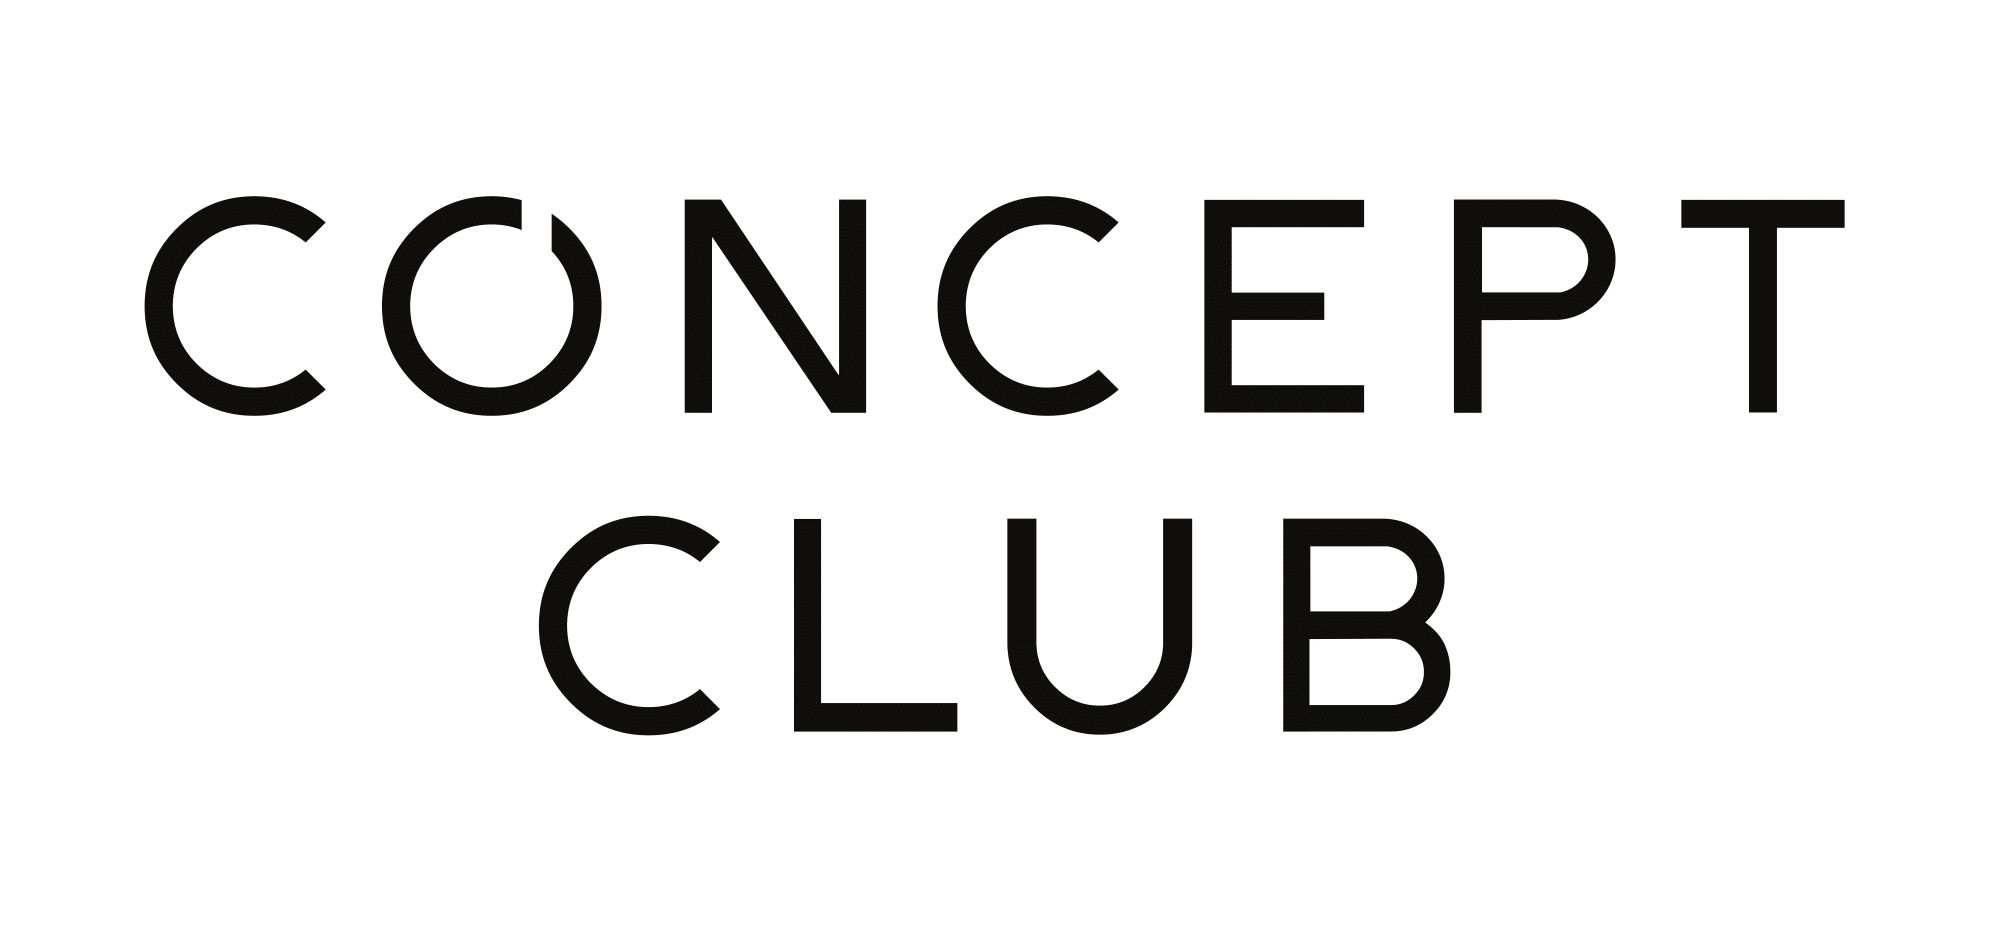 L add. Concept Club логотип. Концепт одежда логотип. Концепт групп лого. Concept Club одежда логотип.